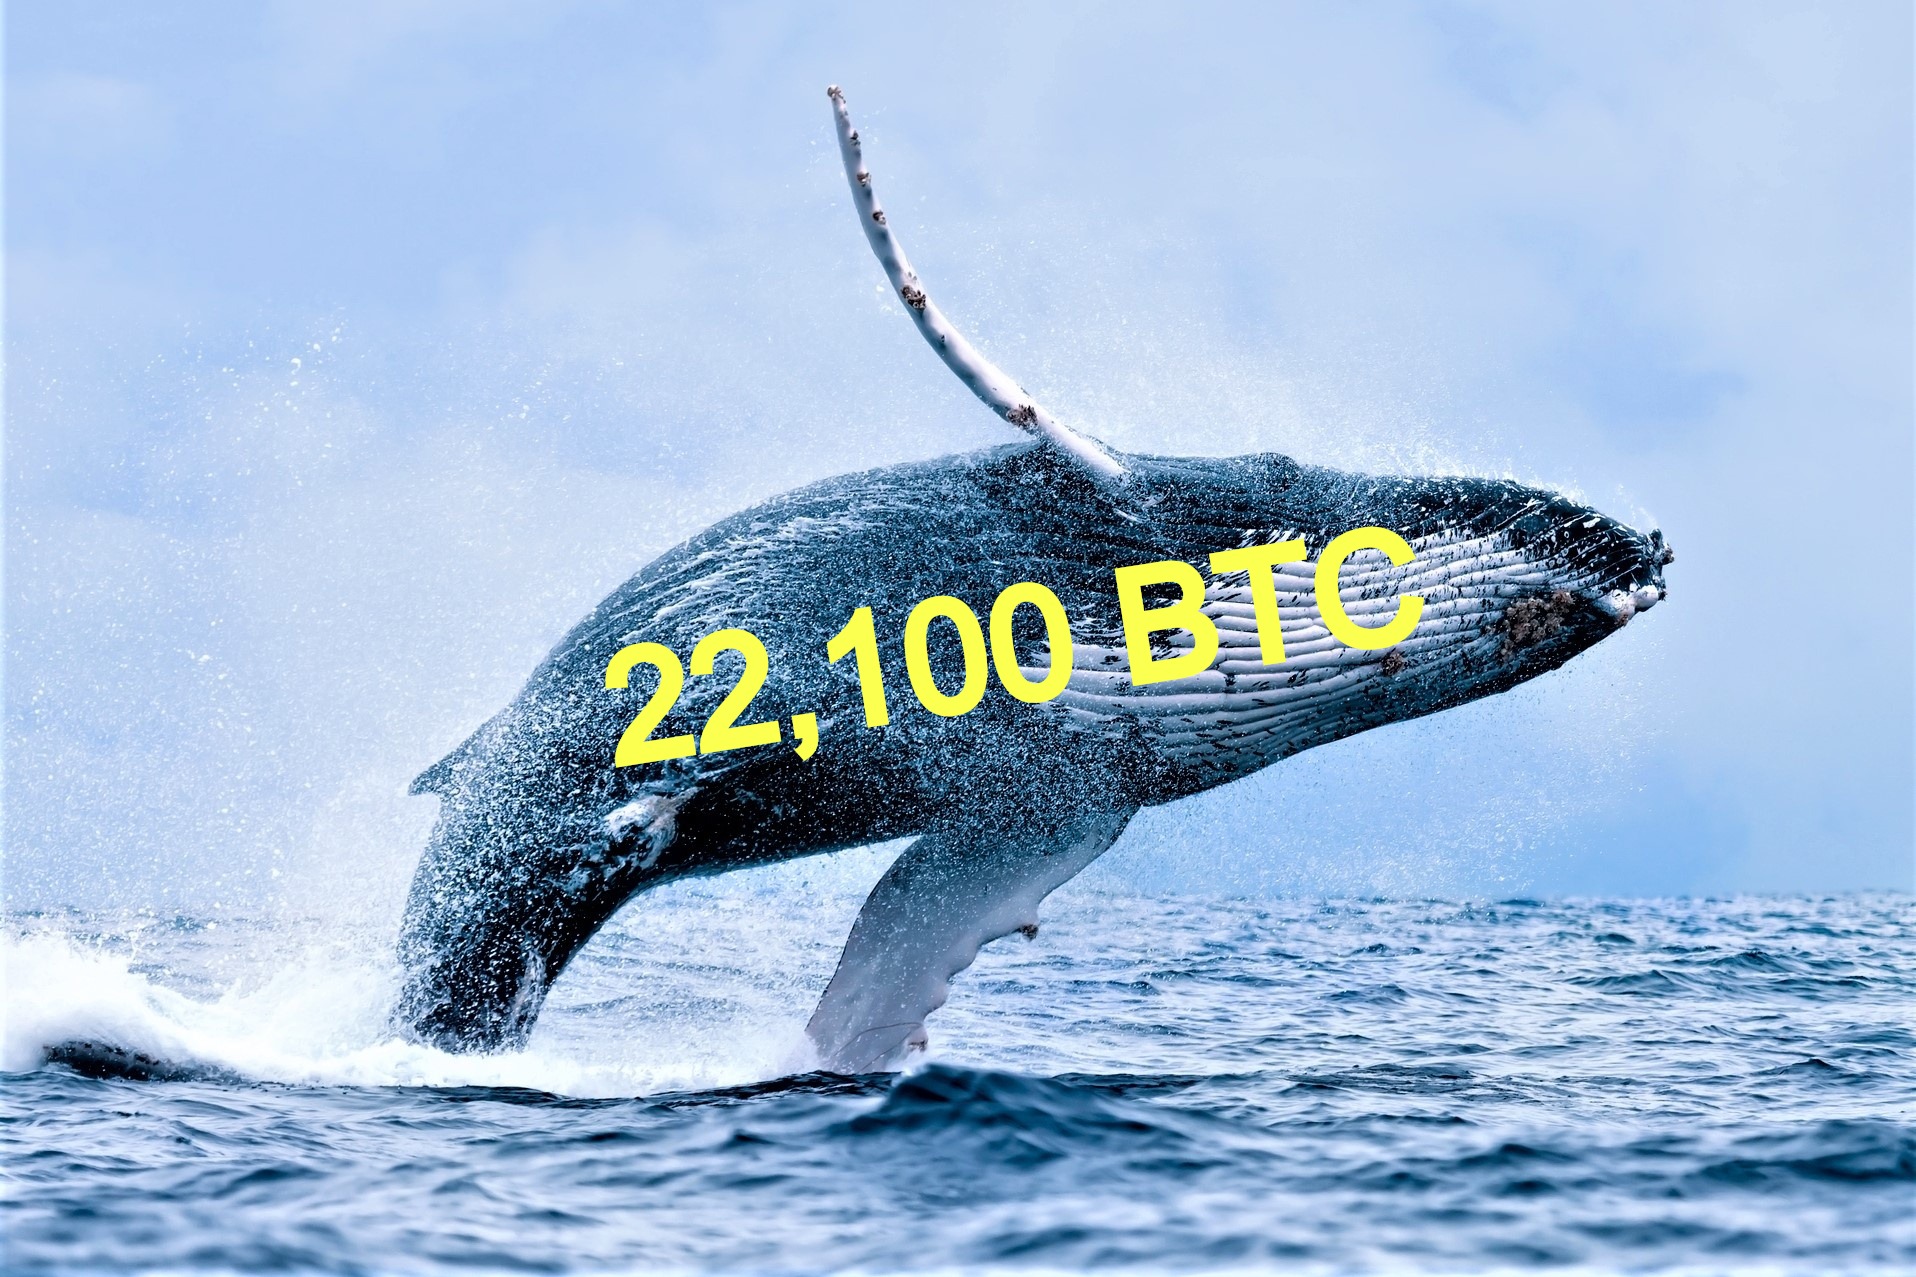 Bitcoin-prijs crasht nadat ‘walvis’ gigantische hoeveelheid Bitcoins verwijderd uit wallet